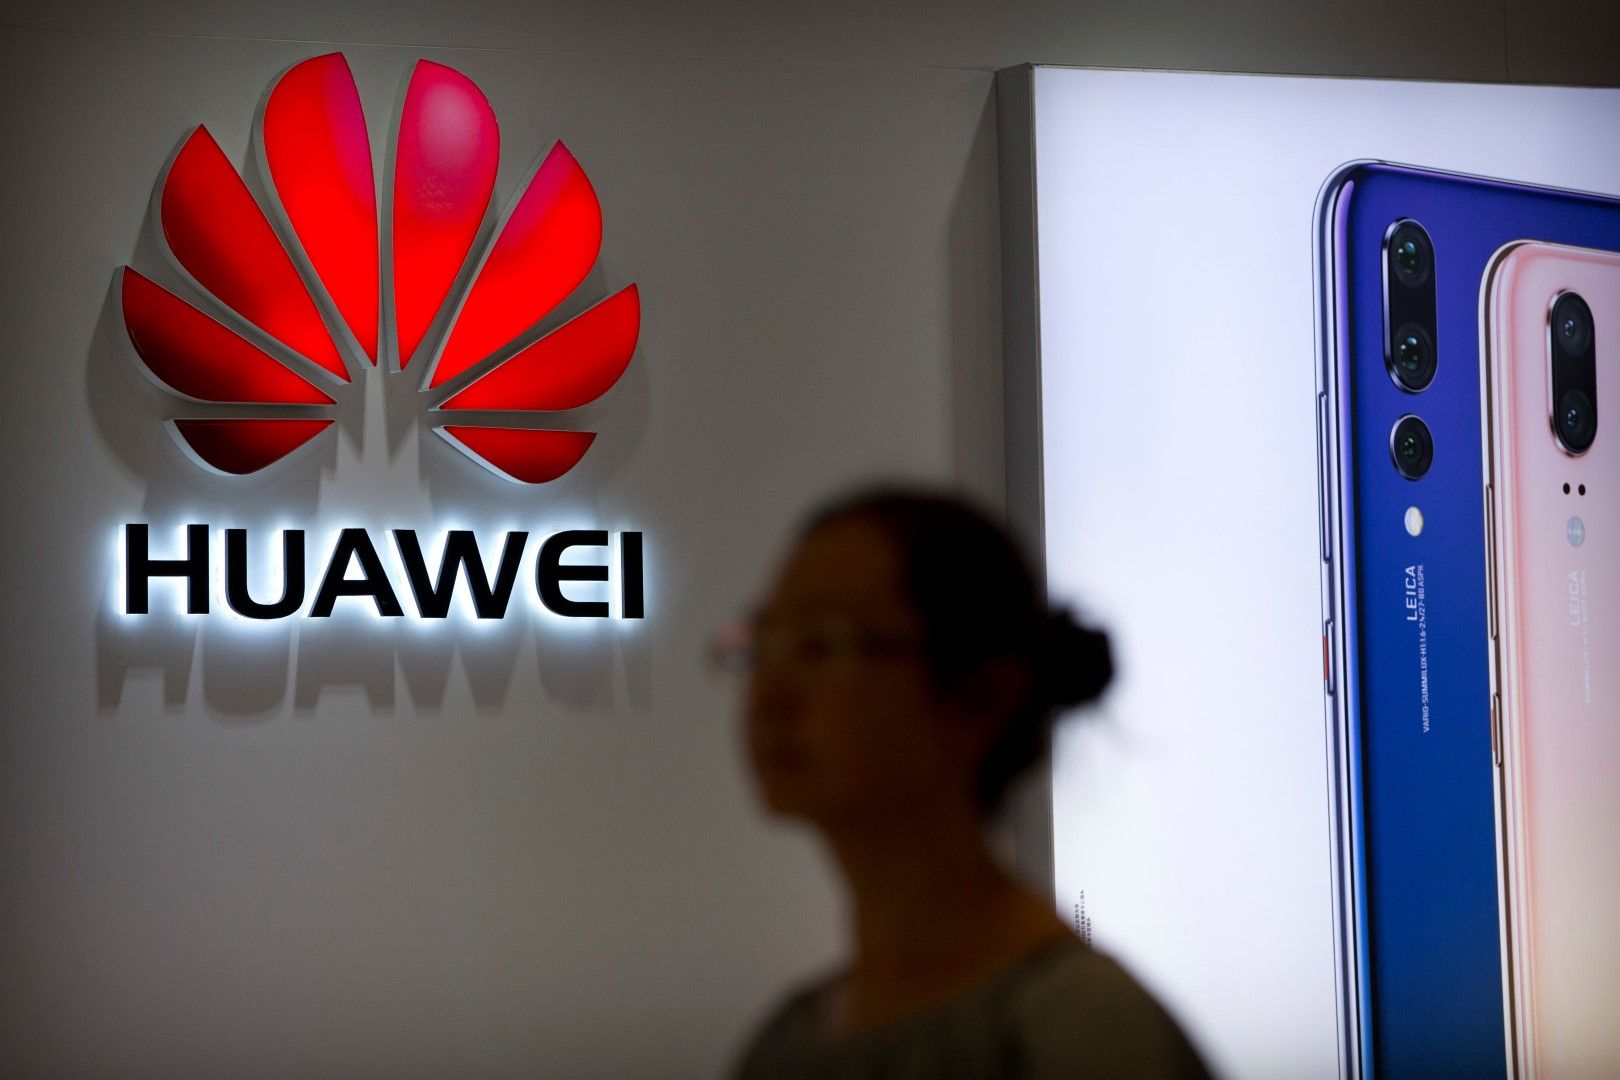 Хуавей (Huawei) и други китайски технологични компании са заподозряни в нерегламентирани дейности